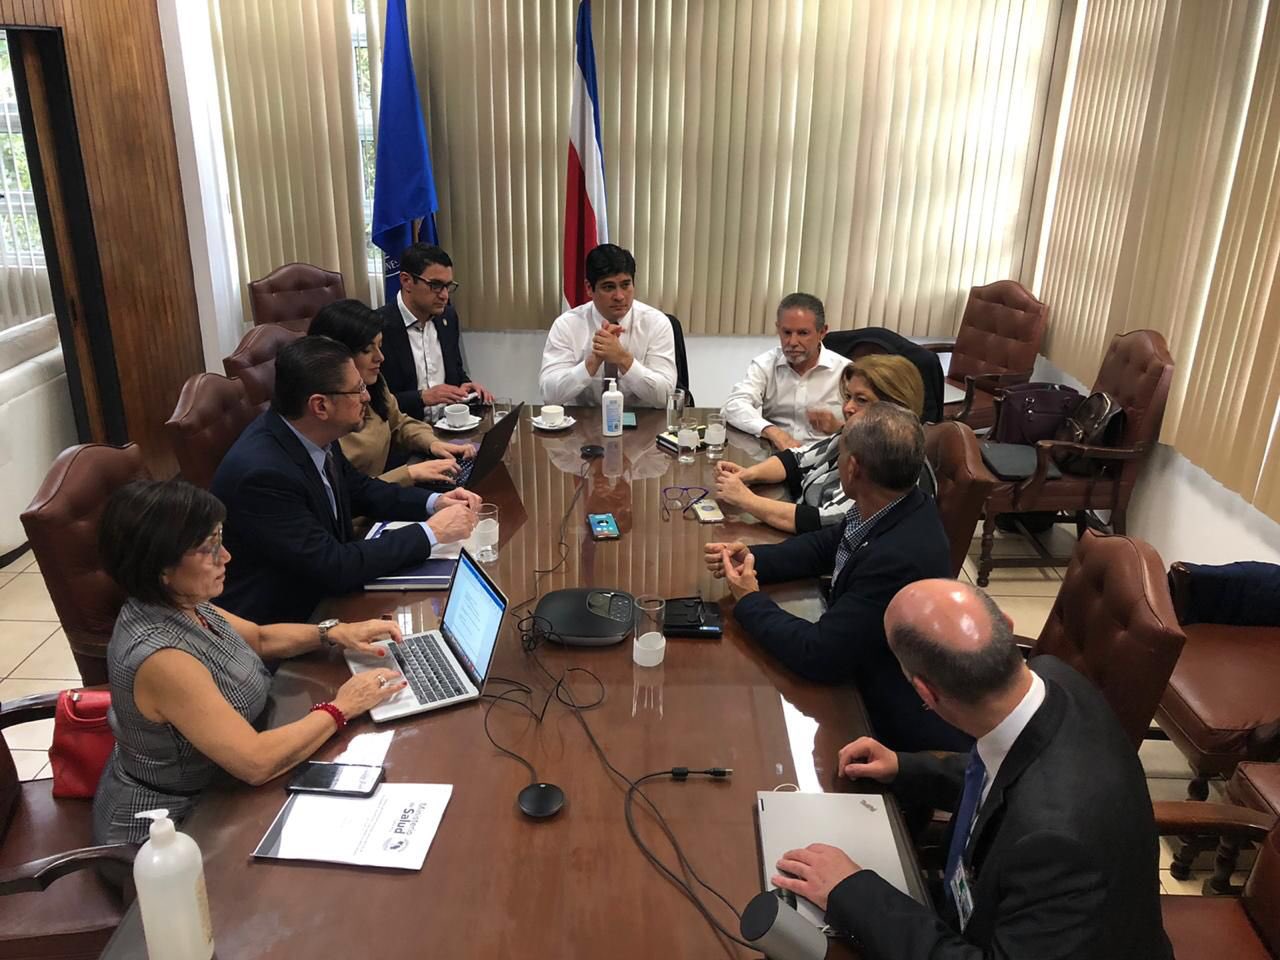 El presidente de Costa Rica, Carlos Alvarado (cen) reunido con parte de su gabinete para atender la pandemia. Foto: Presidencia de Costa Rica